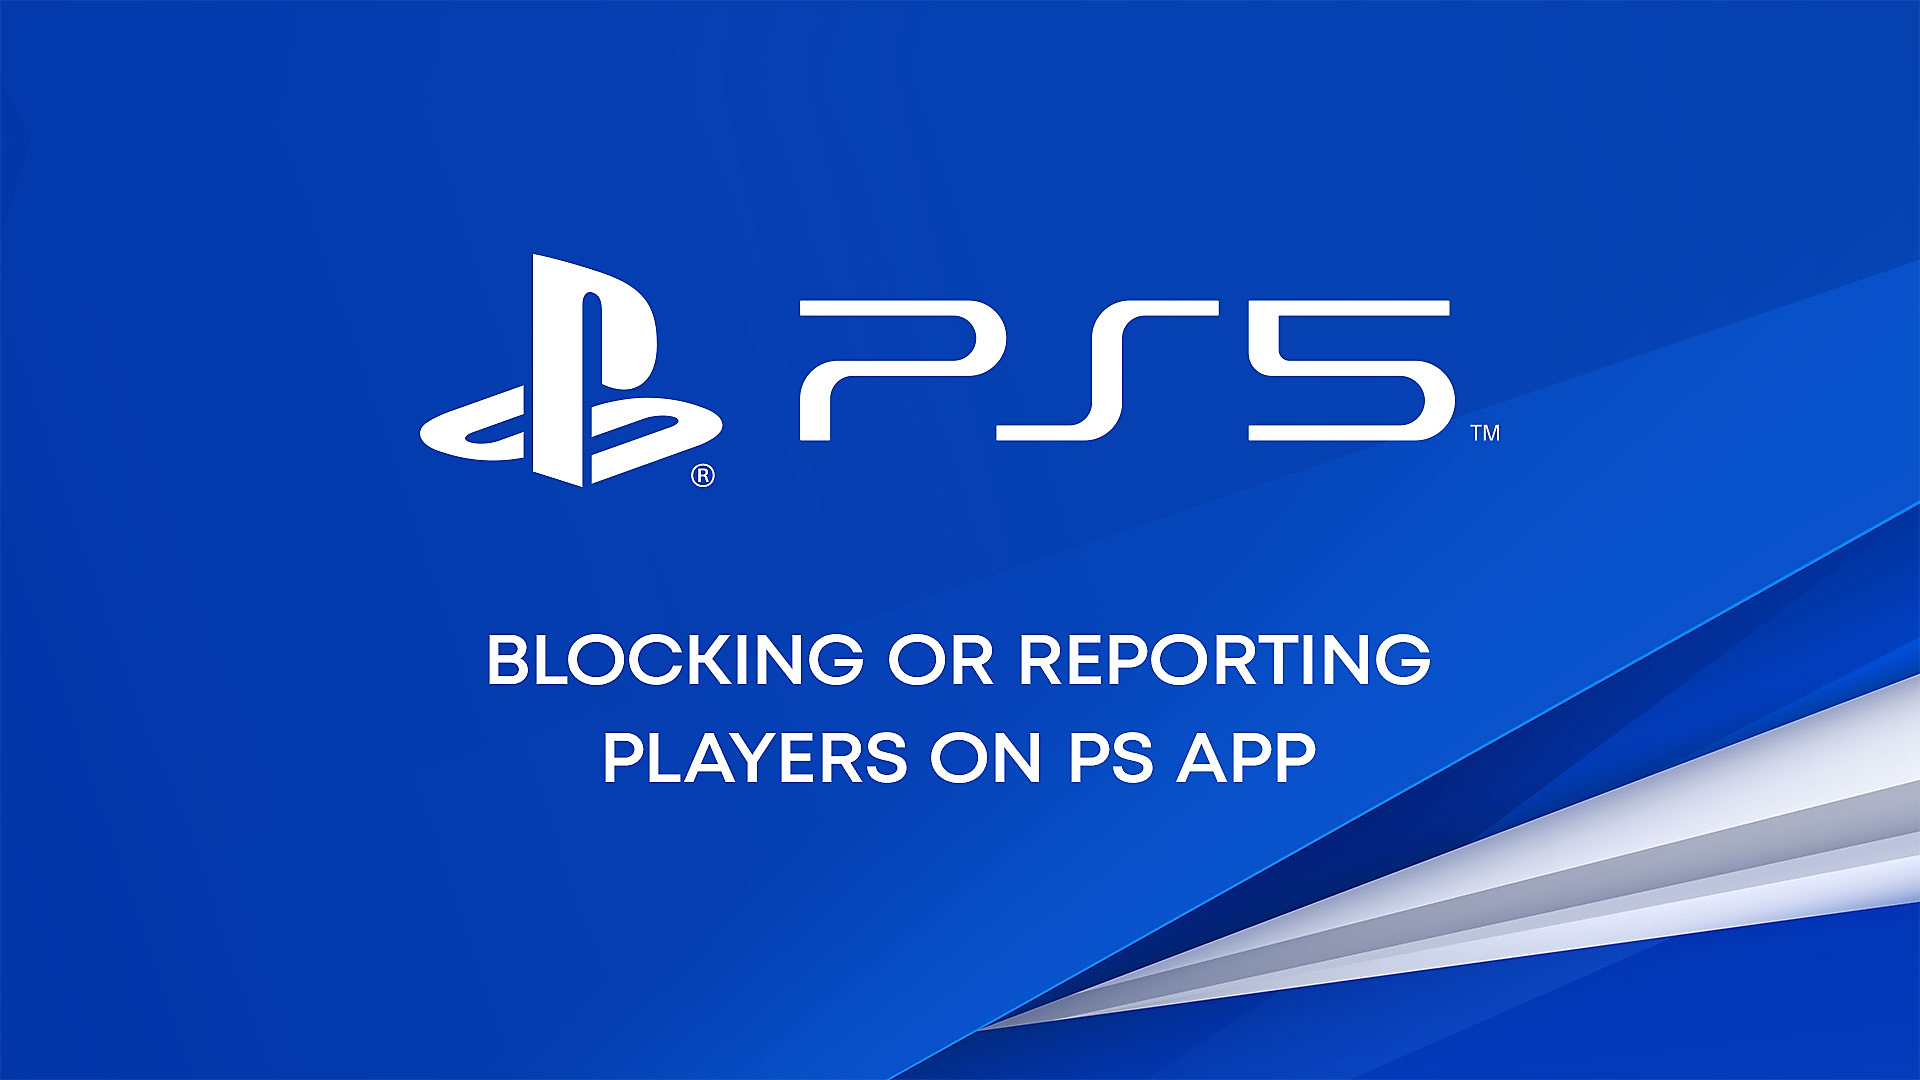 Video de YouTube sobre cómo bloquear o denunciar a jugadores en la PS App